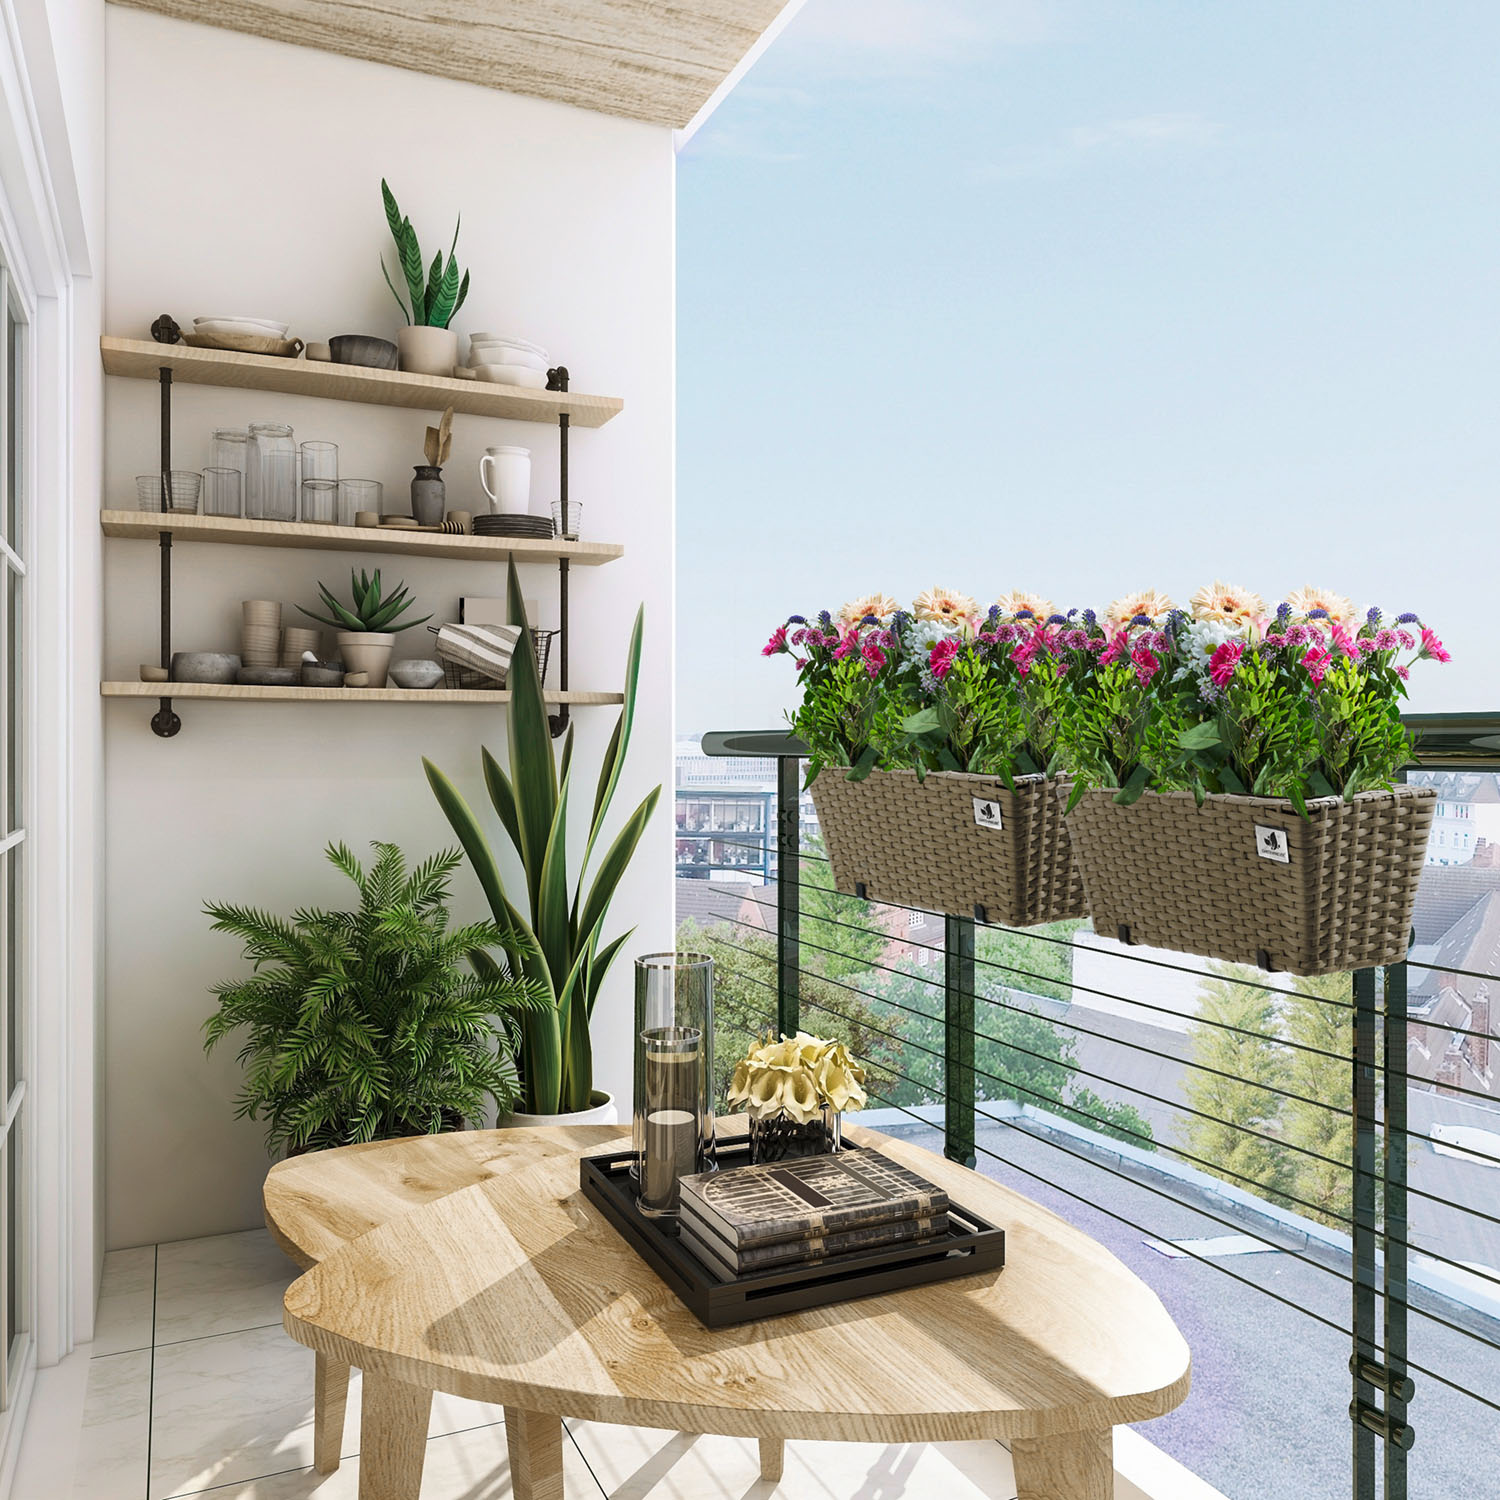 4-er Gartenfreude Balkonkästen Marke der Set von